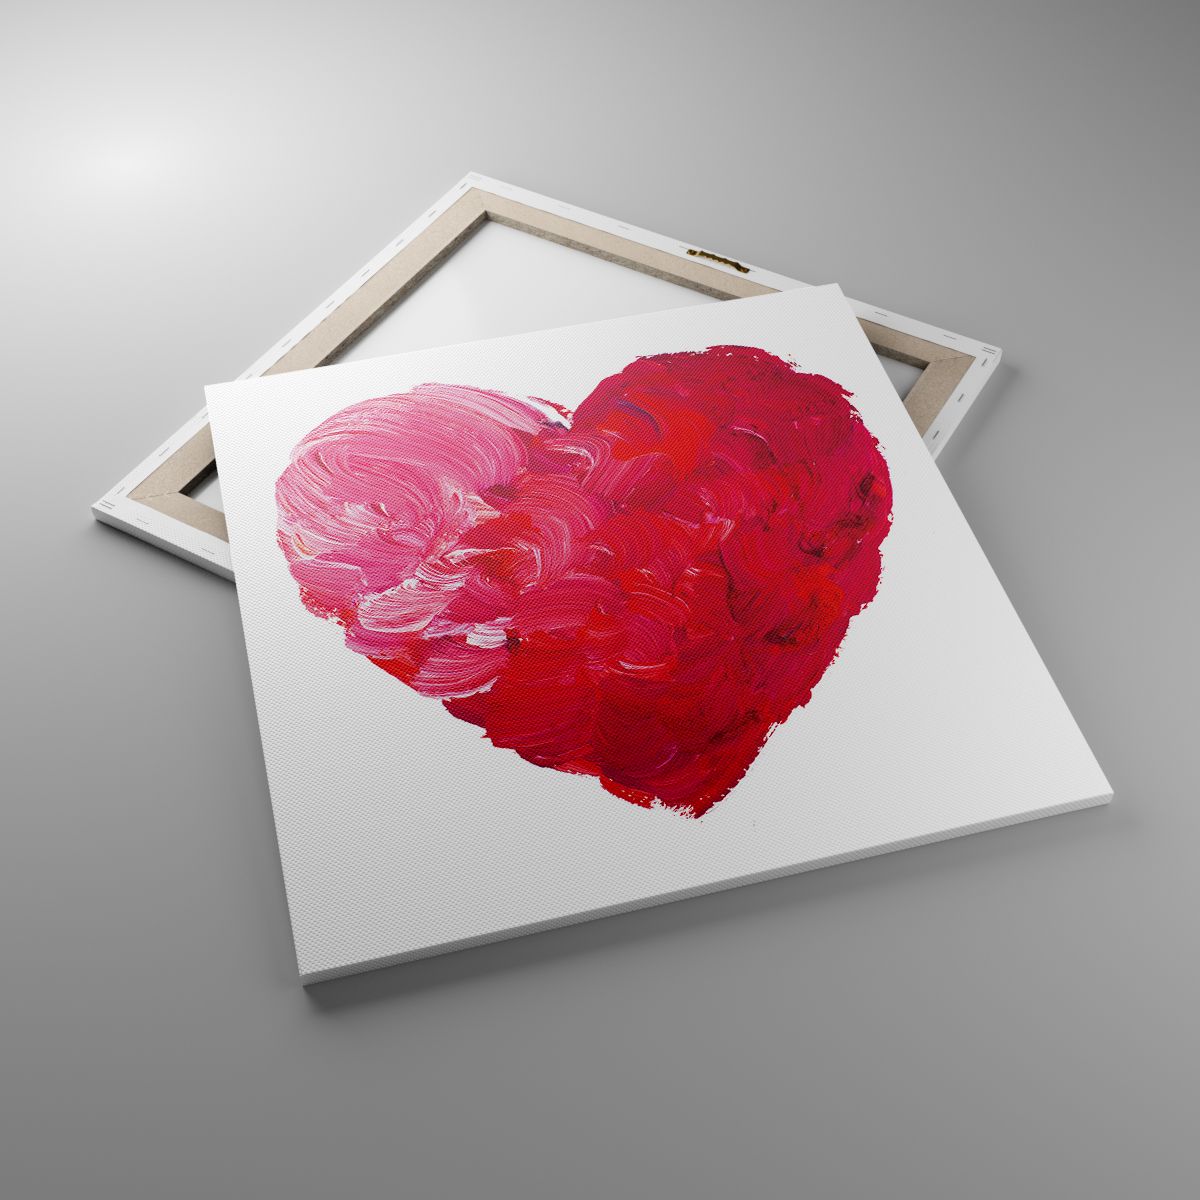 Obrazy Abstrakcja, Obrazy Czerwone Serce, Obrazy Symbol Miłości, Obrazy Walentynki, Obrazy Sztuka